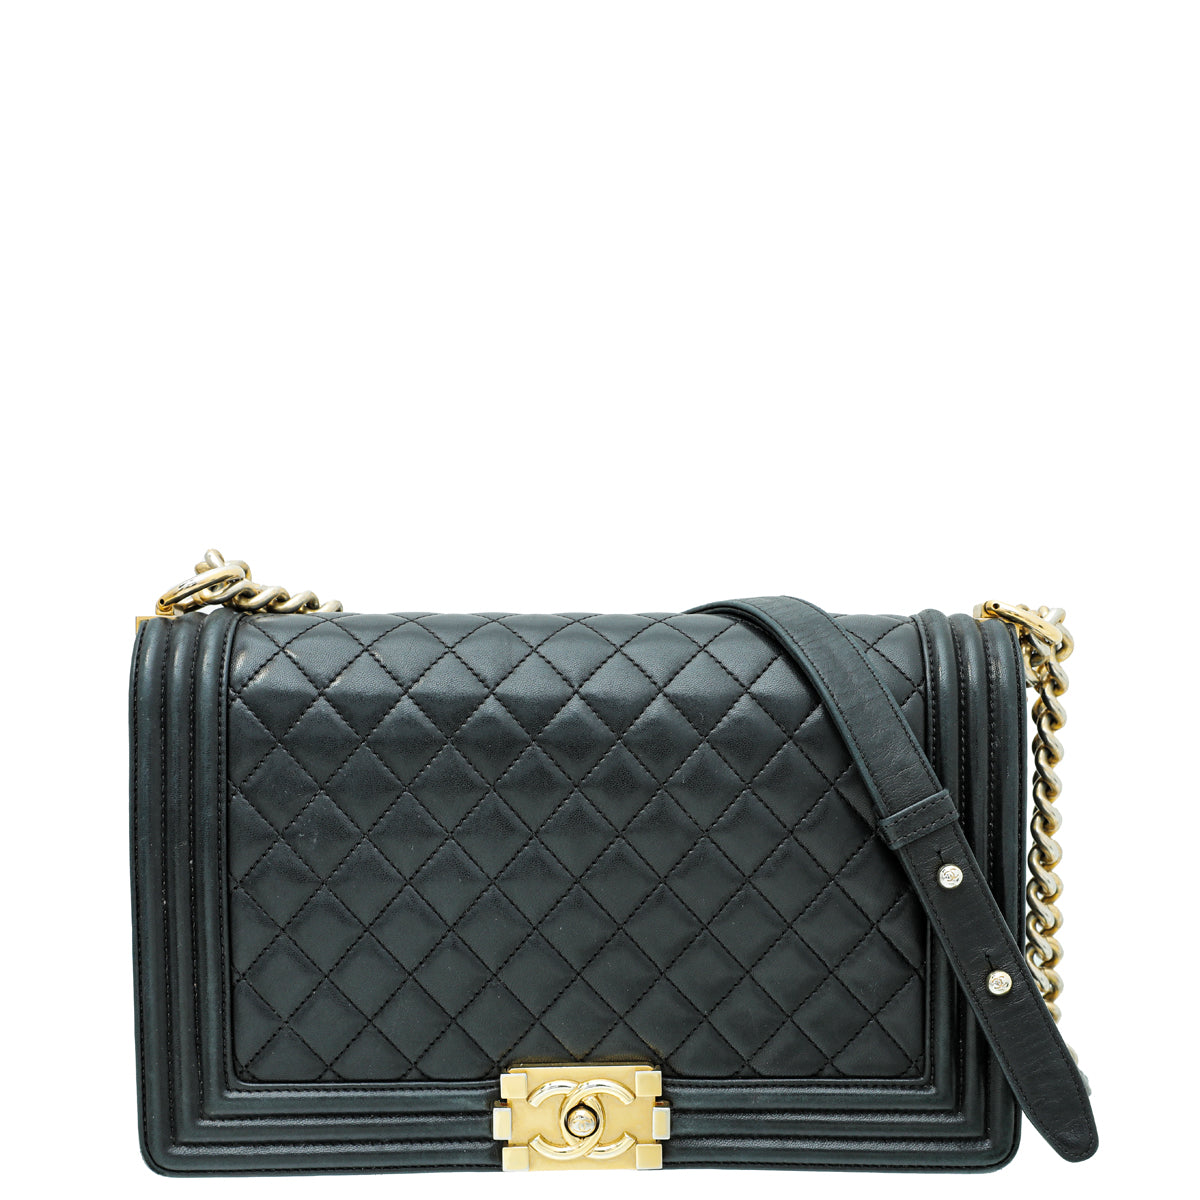 Chanel Black Le Boy New Medium Bag